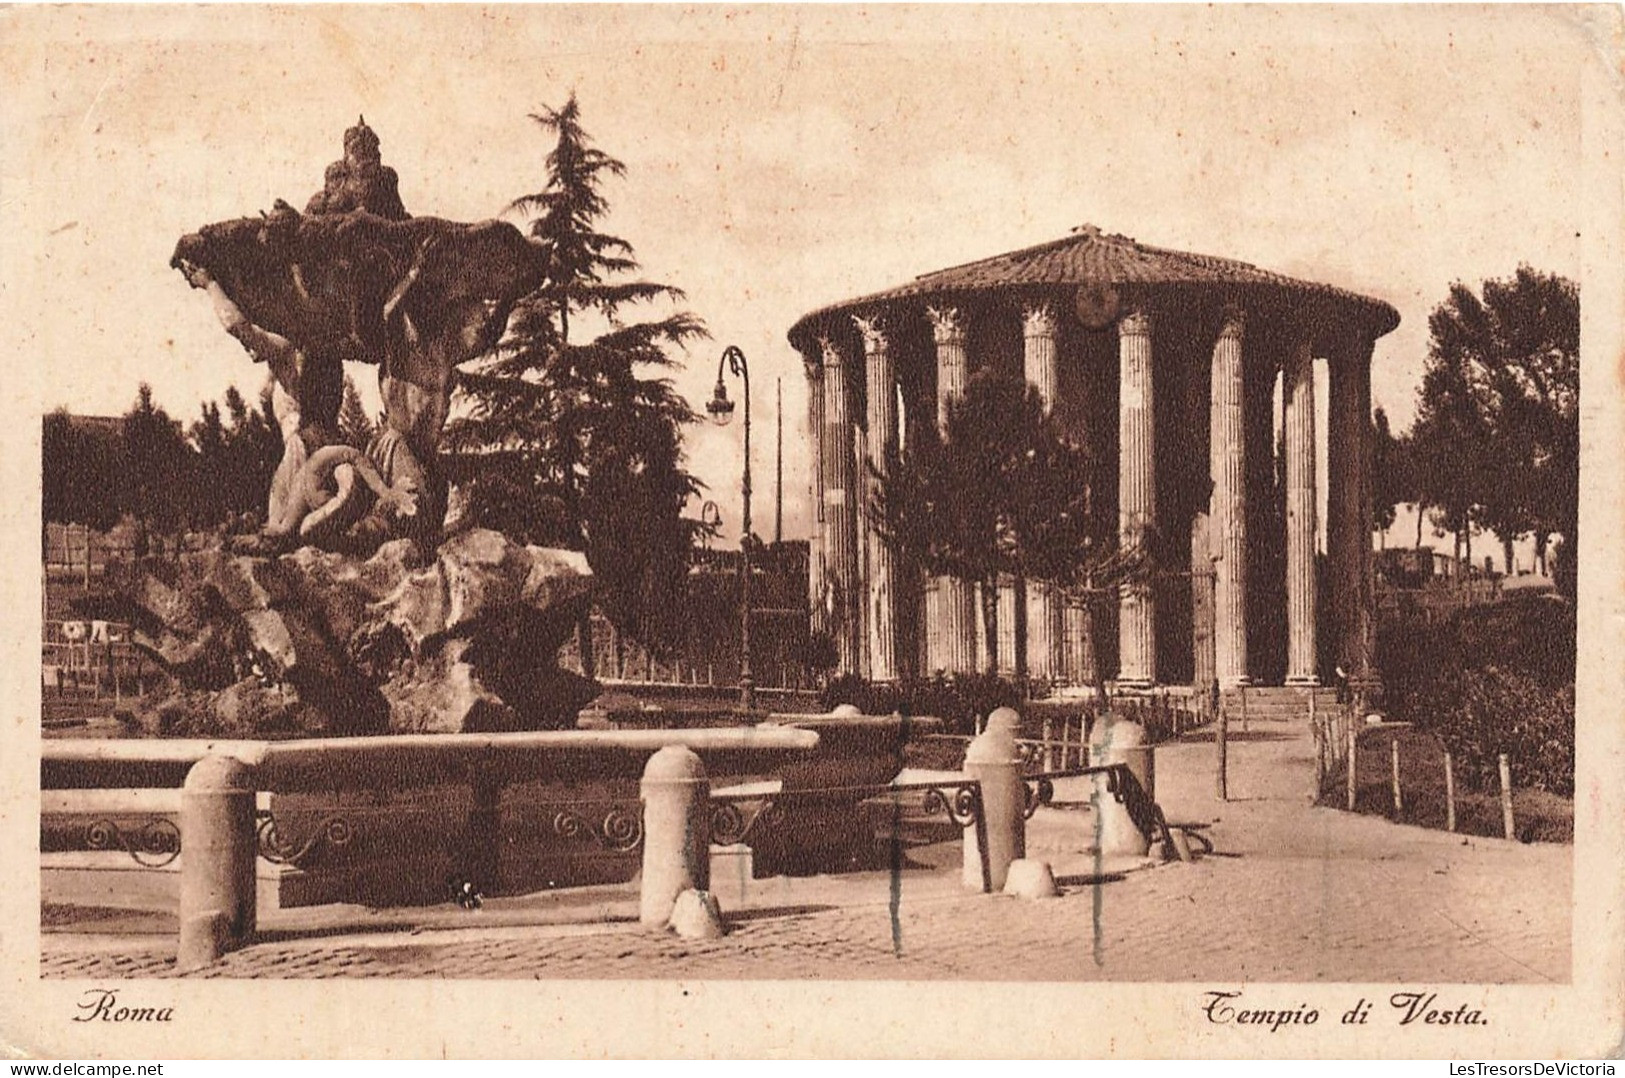 ITALIE - Roma - Tempio Di Vesta - Carte Postale Ancienne - Andere Monumente & Gebäude